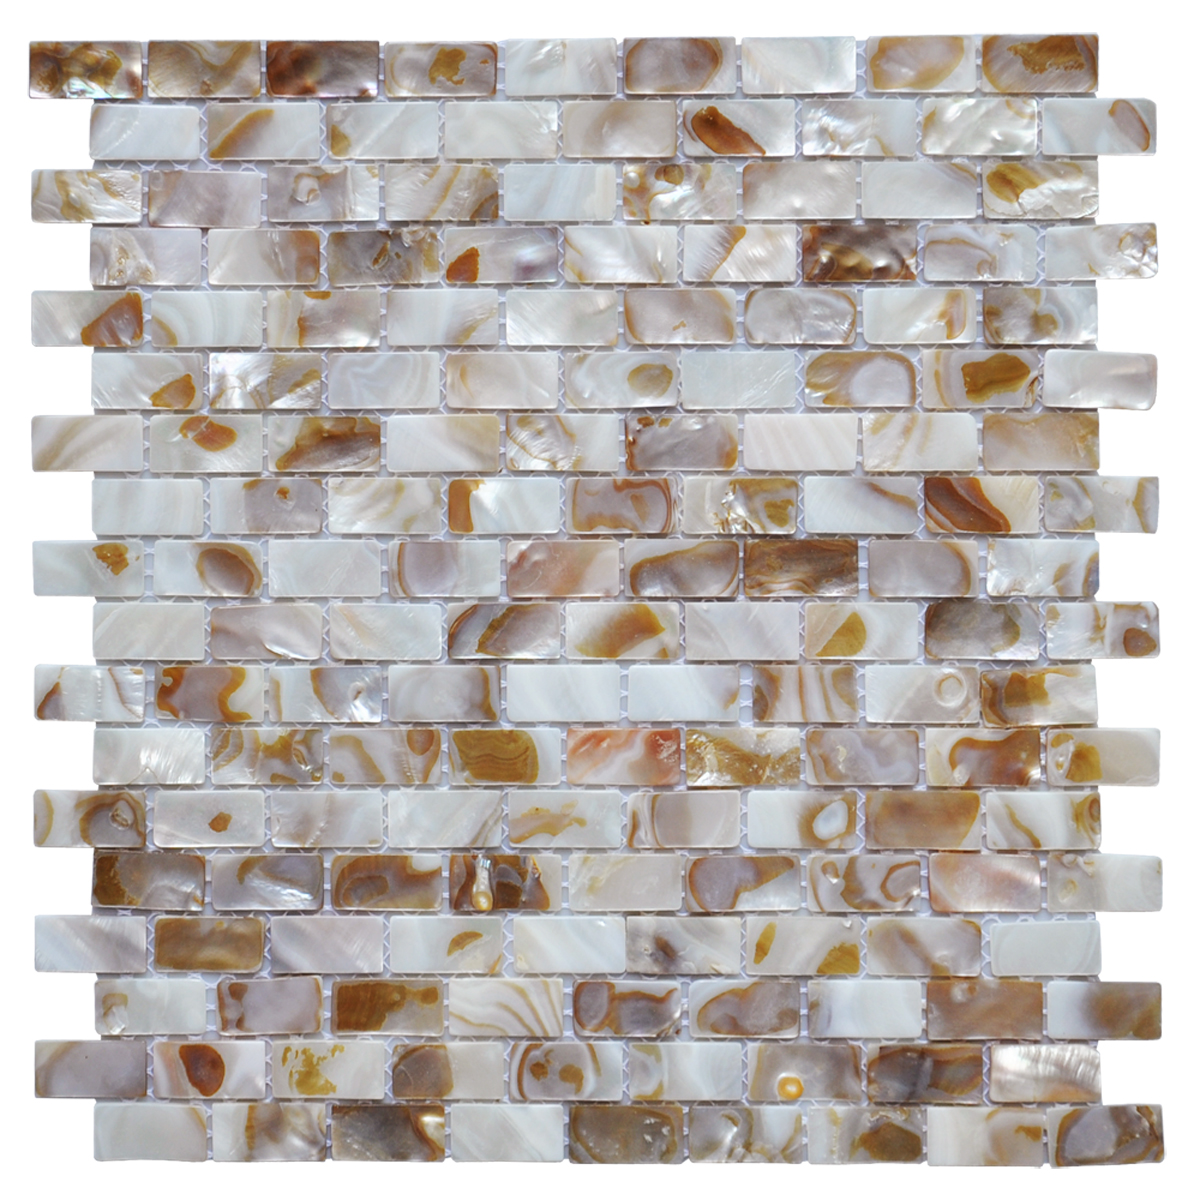 A18016 - 10 - piece Mother of Pearl Tile for Kitchen Backsplash, Spa Tile, Pool Tile